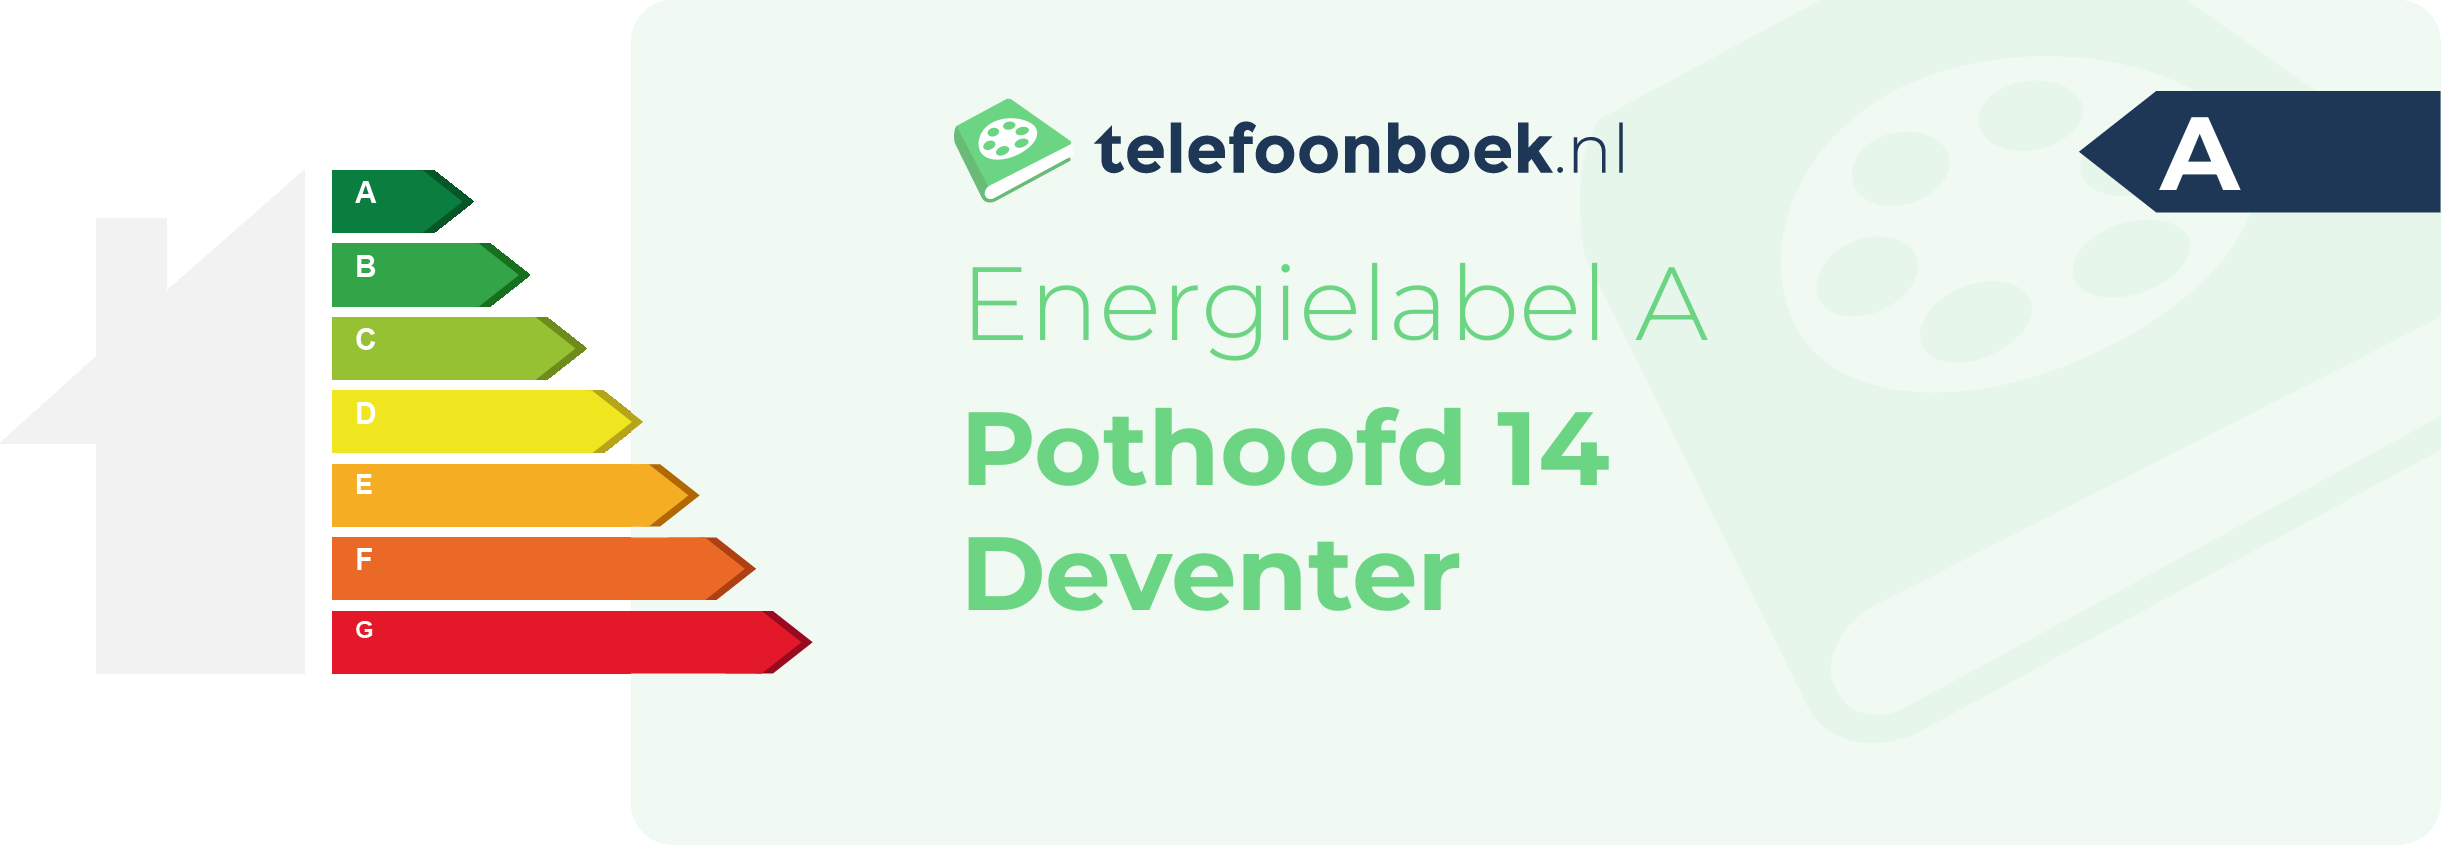 Energielabel Pothoofd 14 Deventer